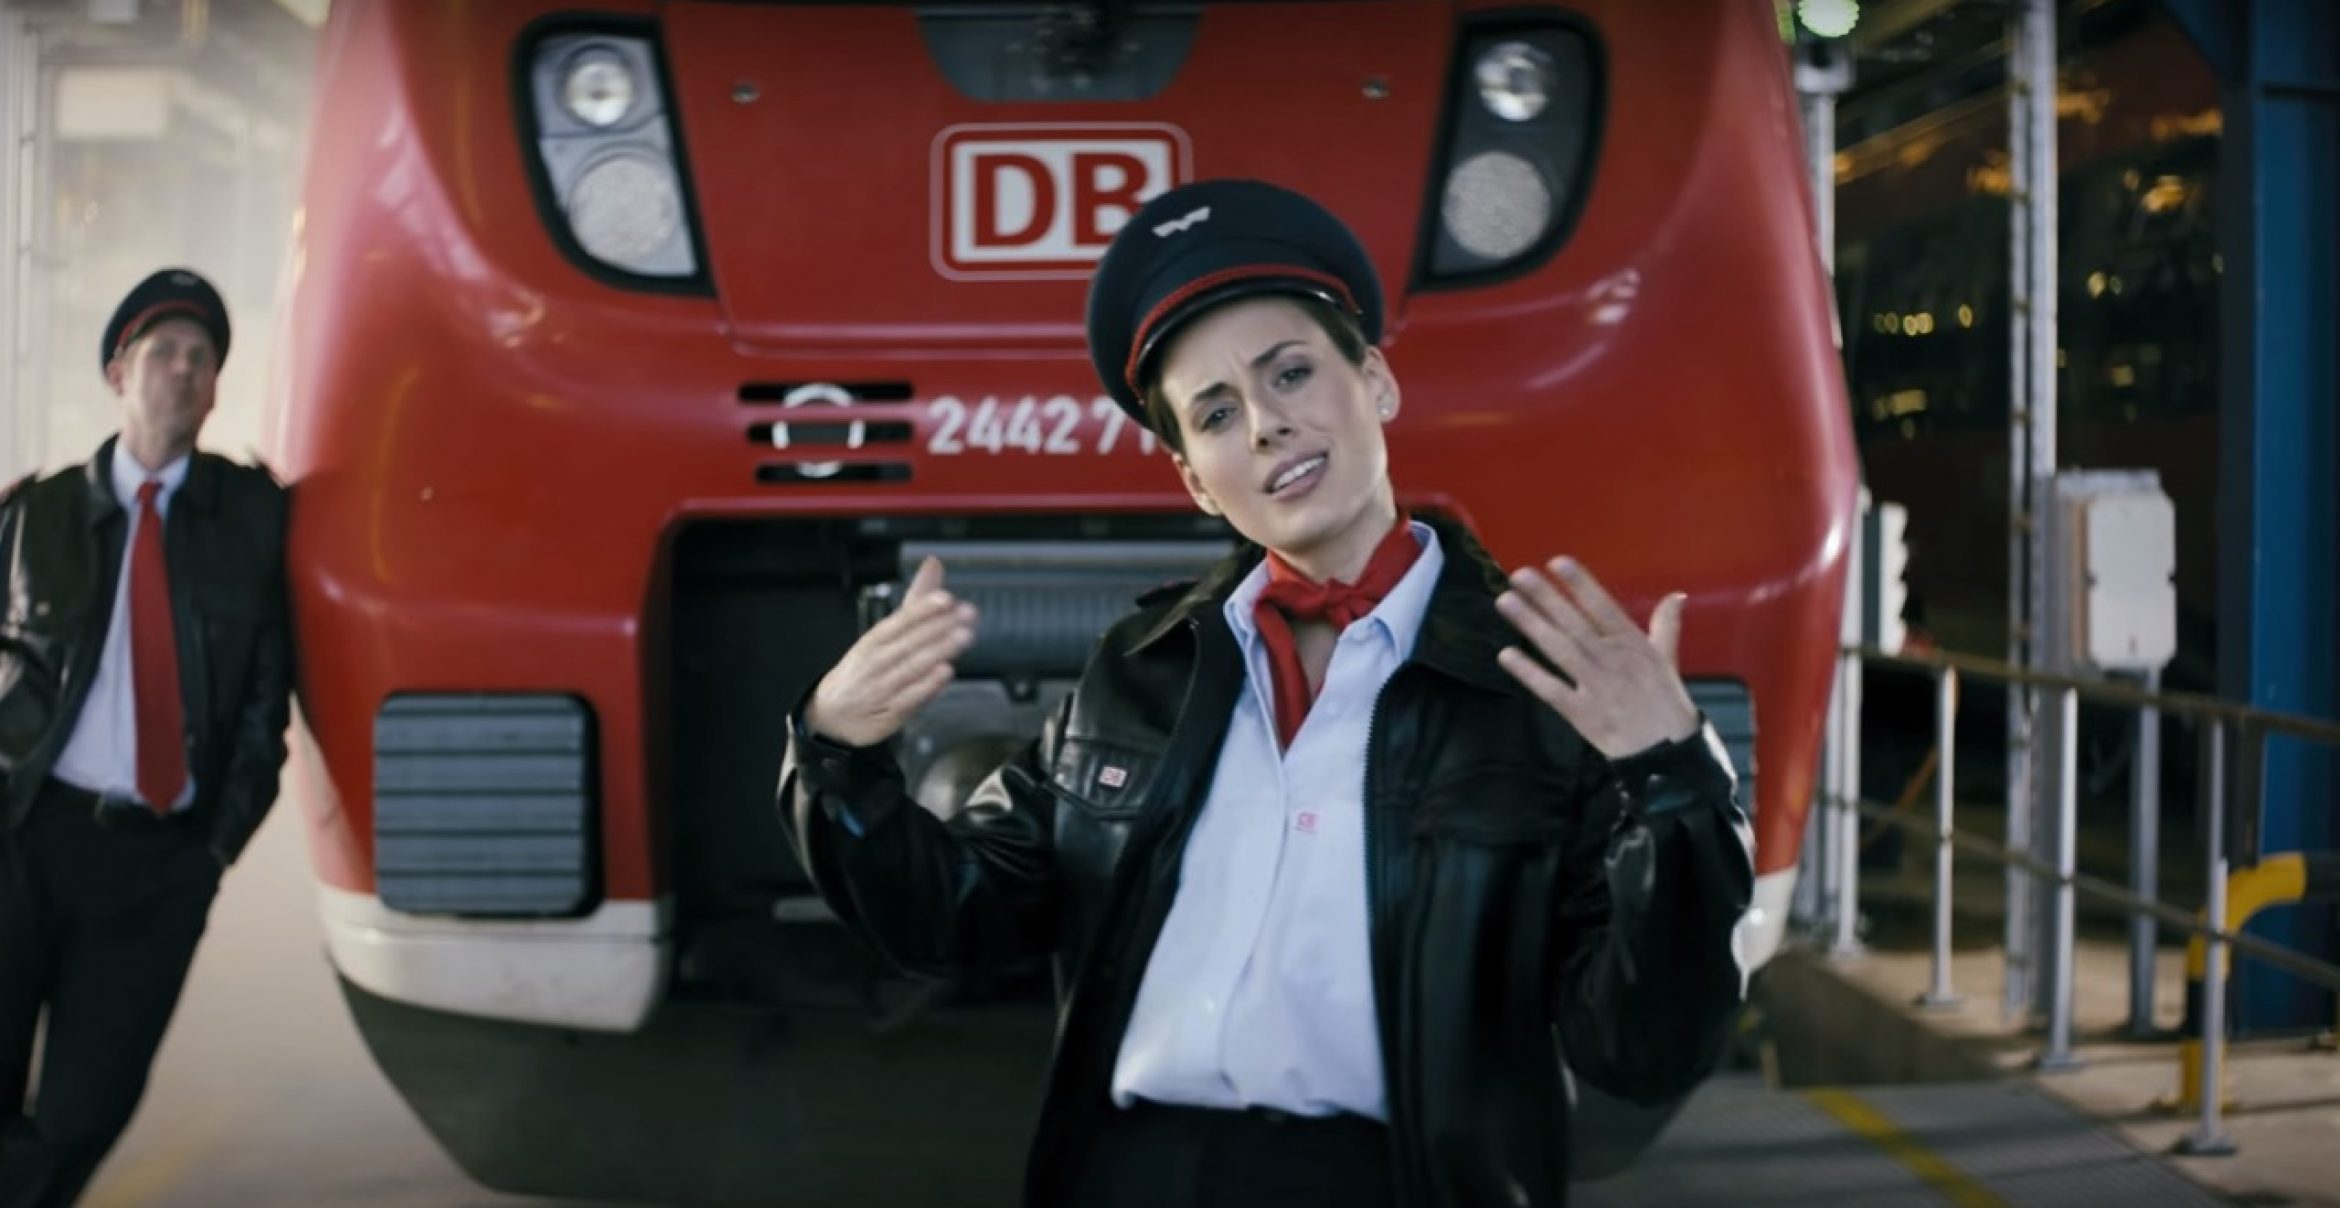 “Steig ein, wir rollin“: Mit HipHop und bayrischen Klischees wirbt die Deutsche Bahn um Fahrgäste